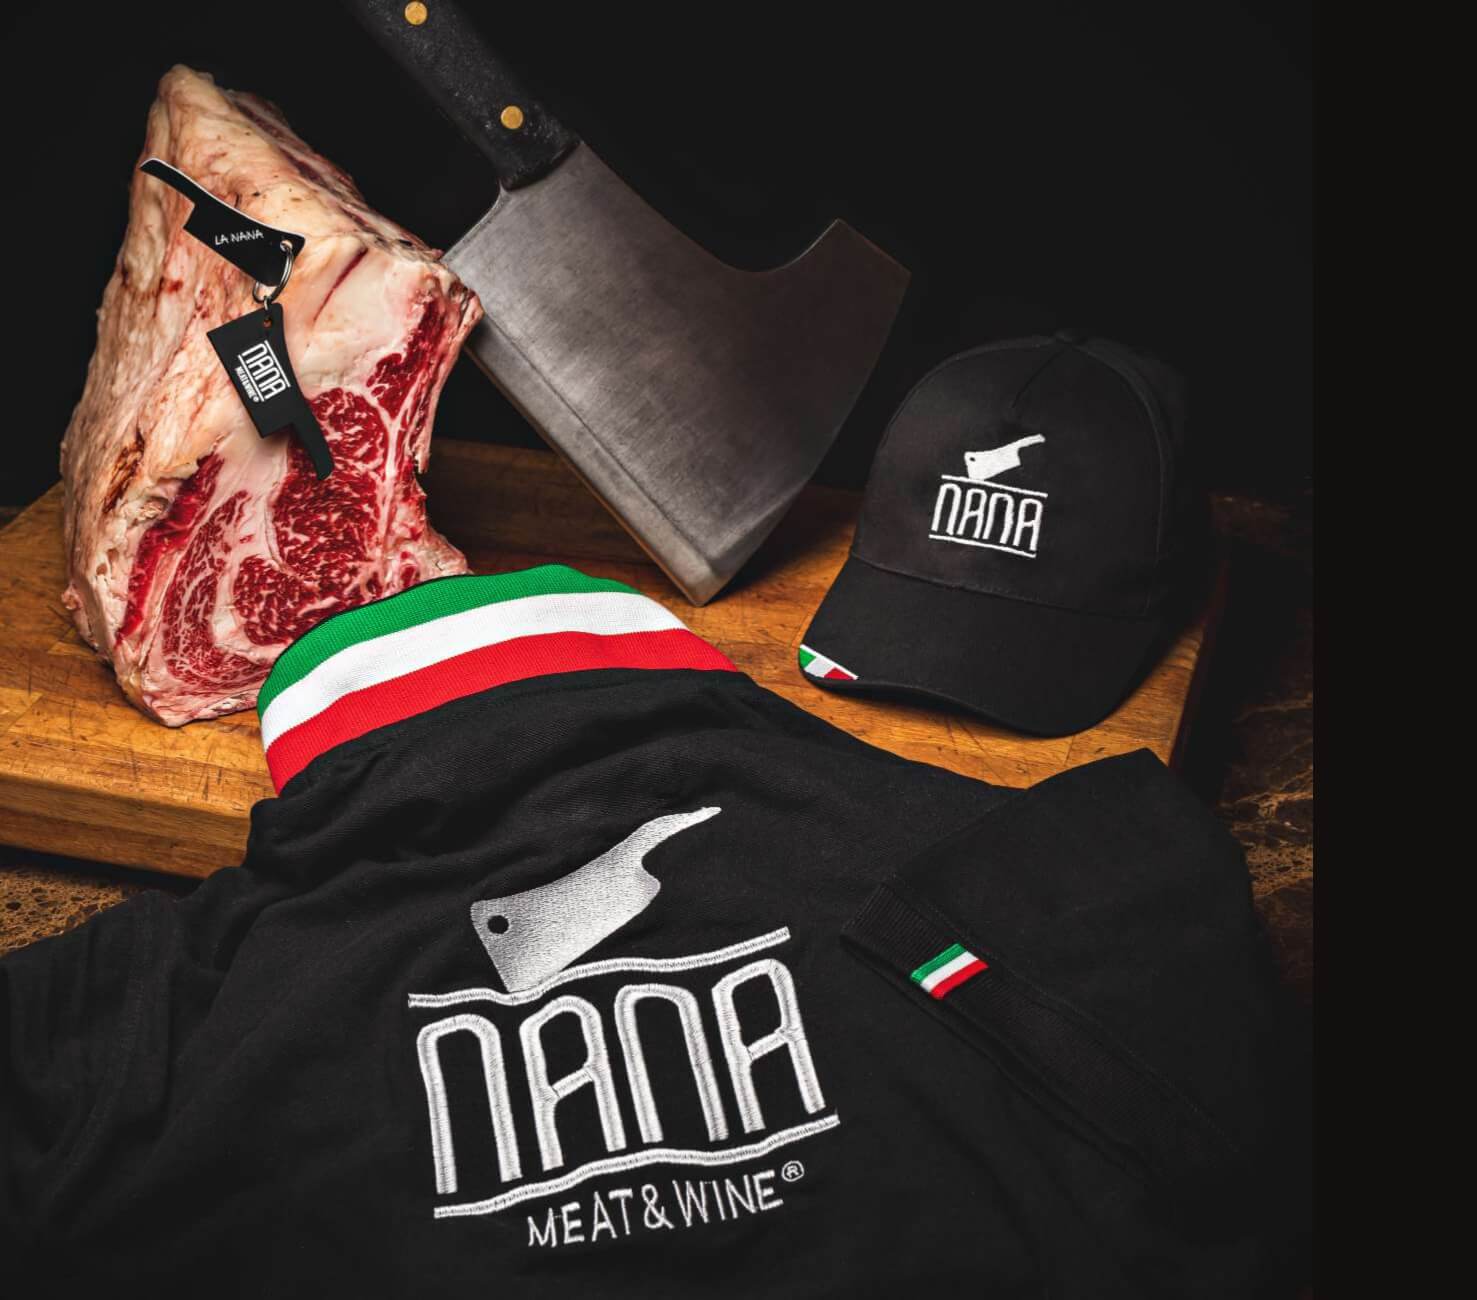 Contatti Menù Nana Meat & Wine